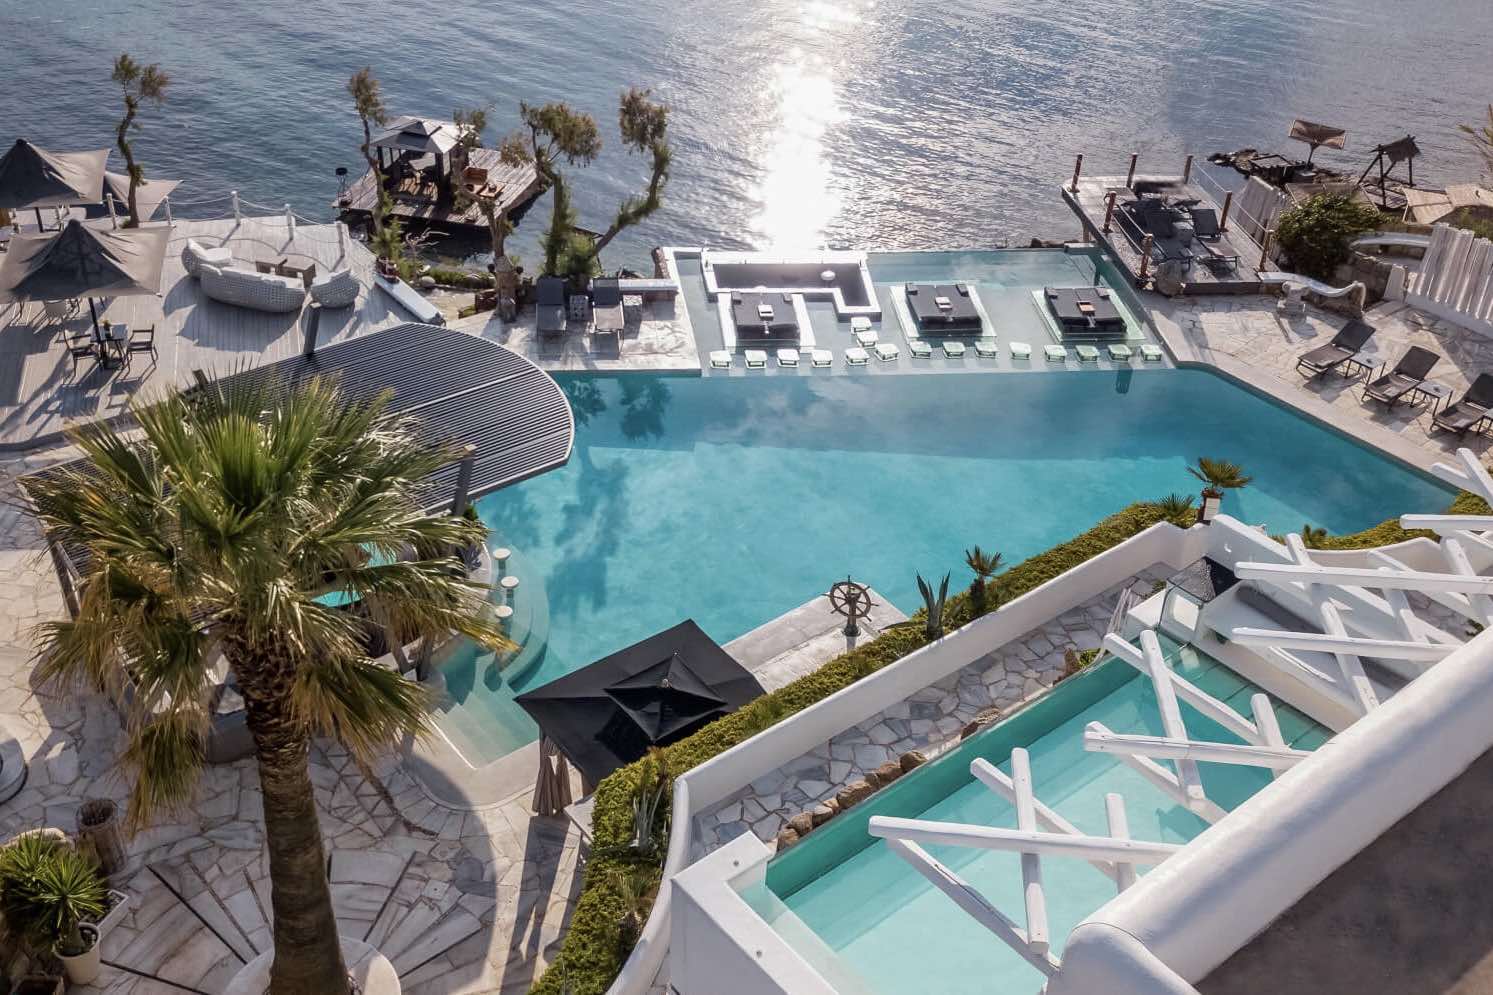 Kivotos Luxury Hotel in Mykonos